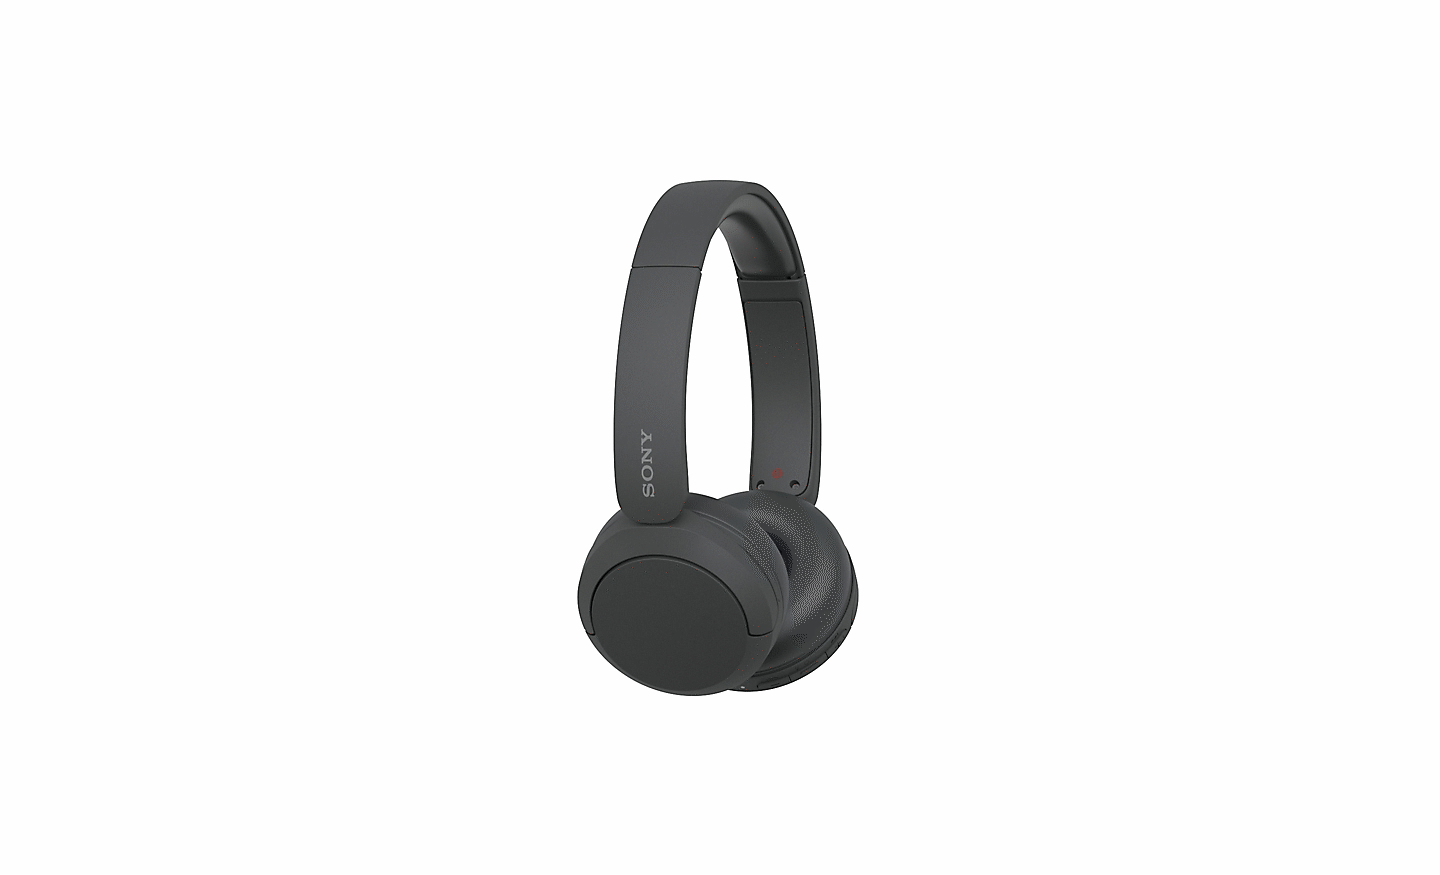 תמונה של זוג שחור של אוזניות Sony WH-CH520 על רקע לבן